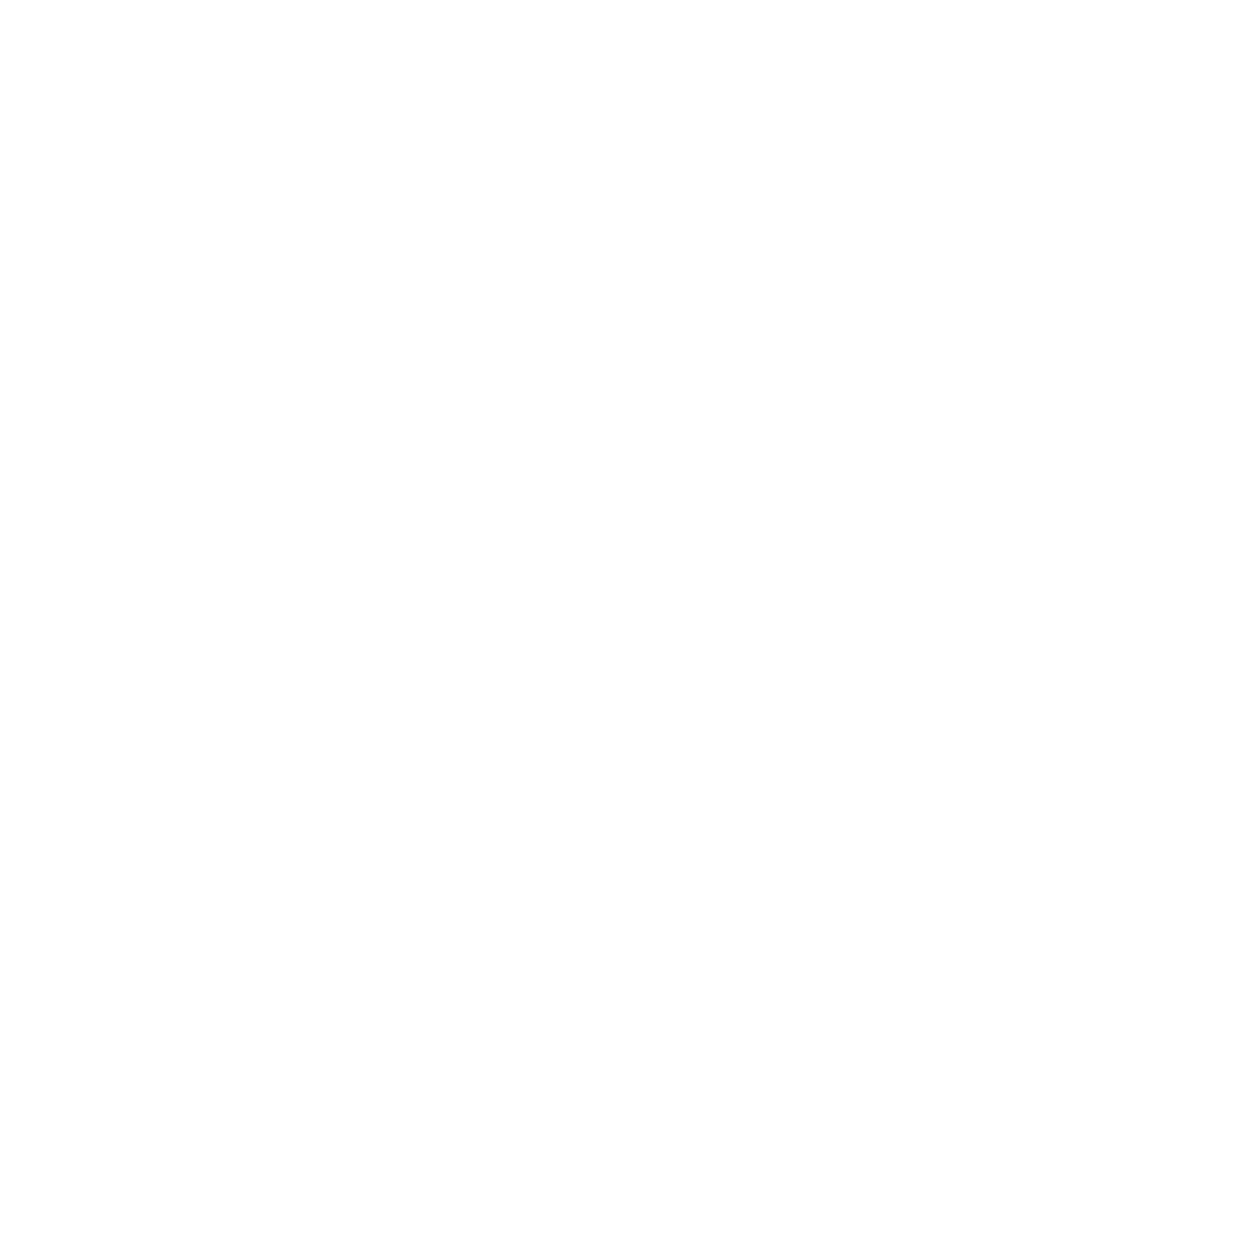 Backup Telefonanschluss per Online oder Telefonieverwaltung